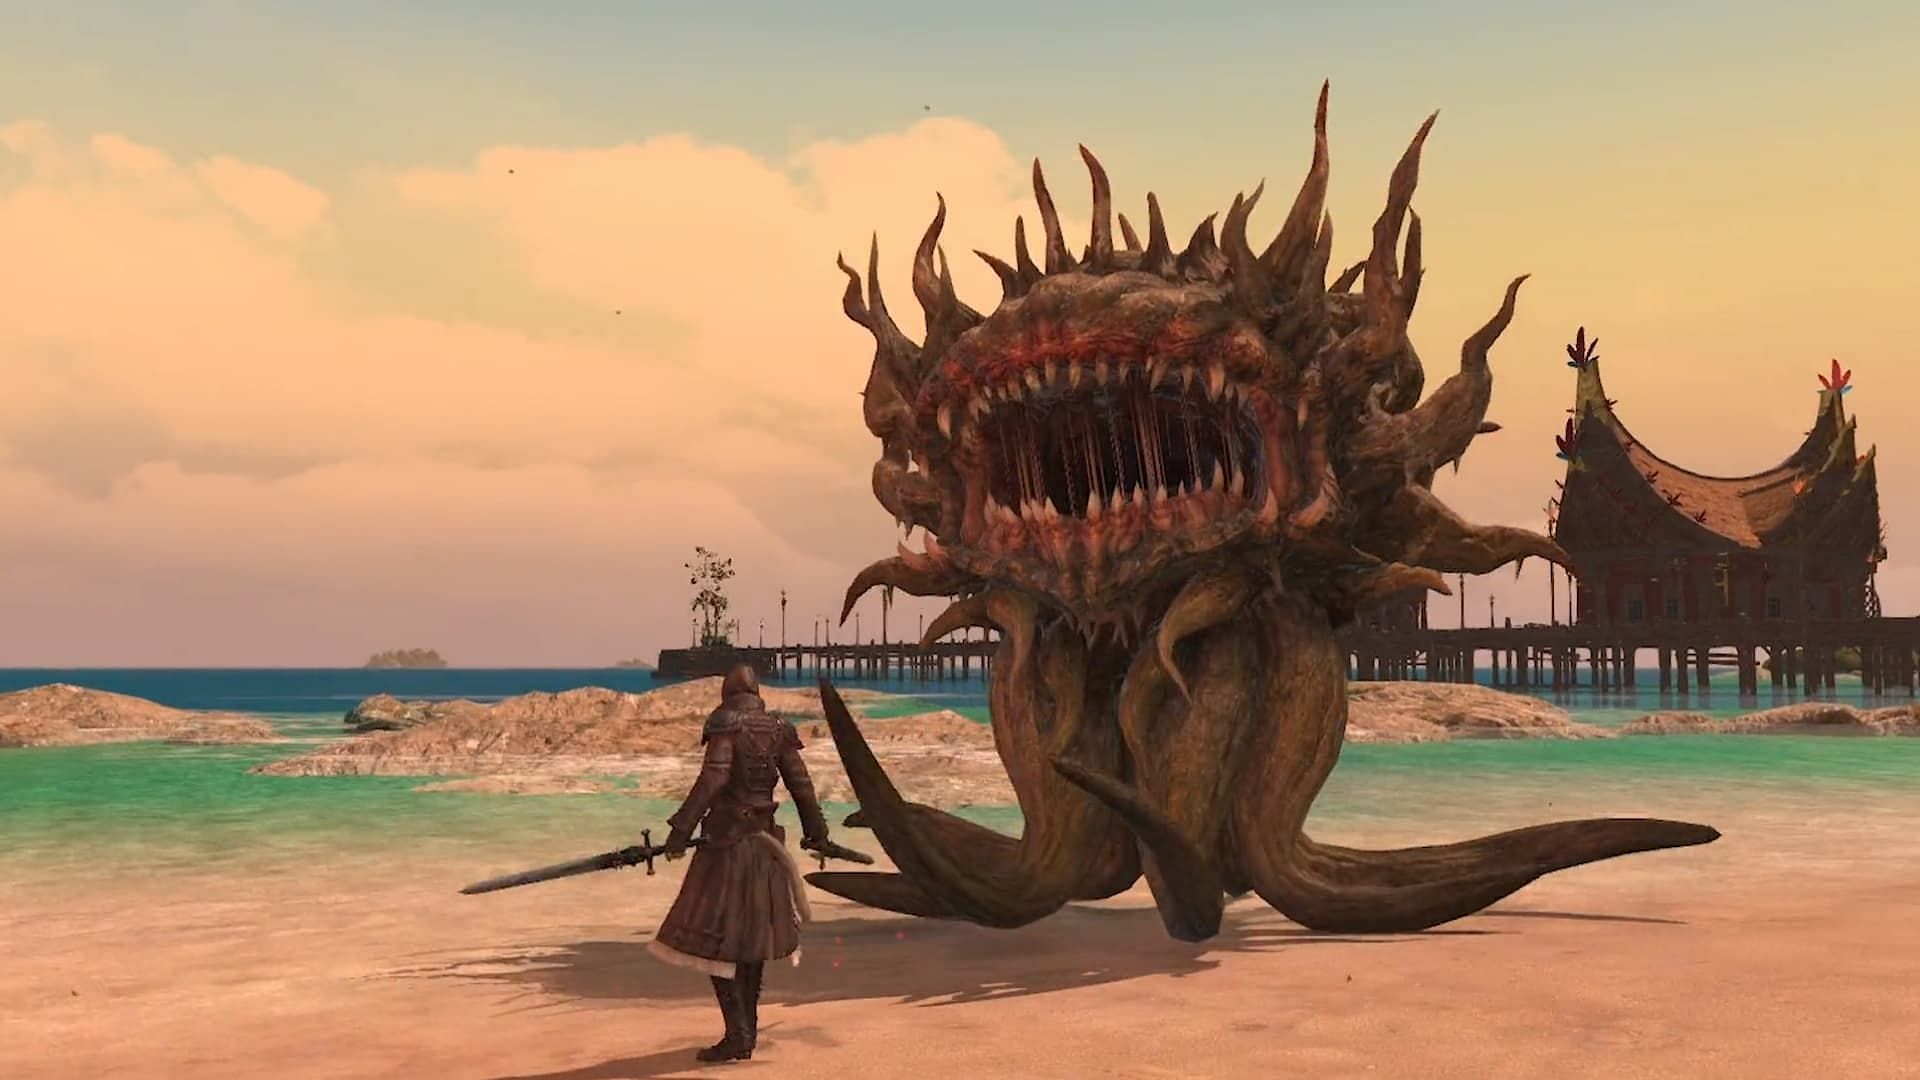 The Viper job battling a Morbol in Final Fantasy 14